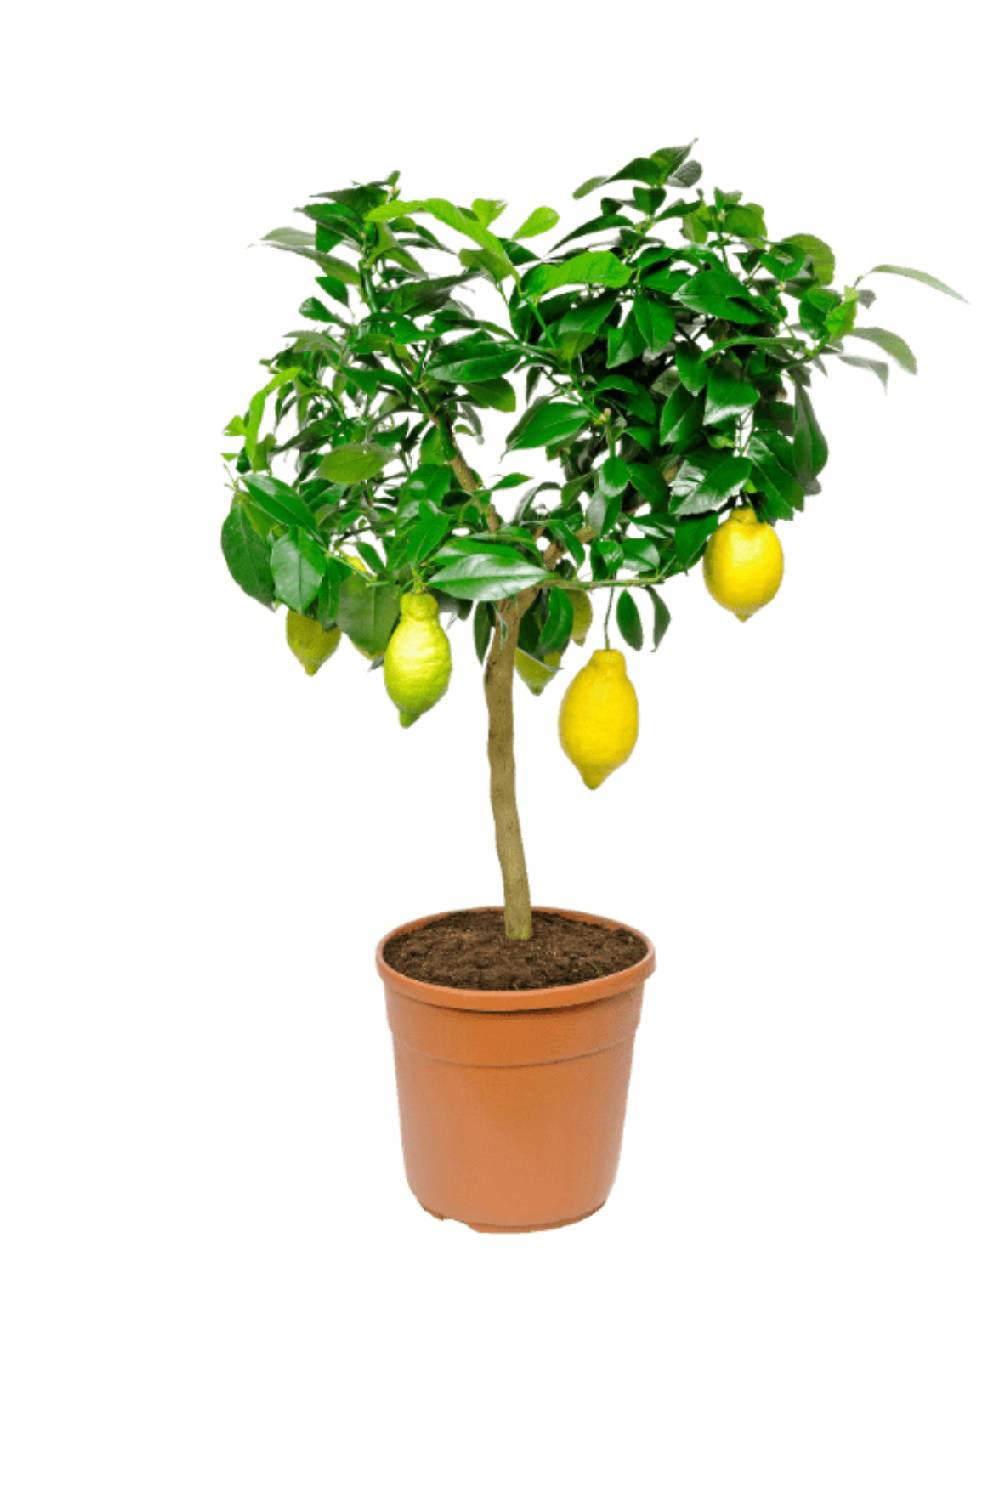 plantas bonitas baratas aldi y lidl limonero